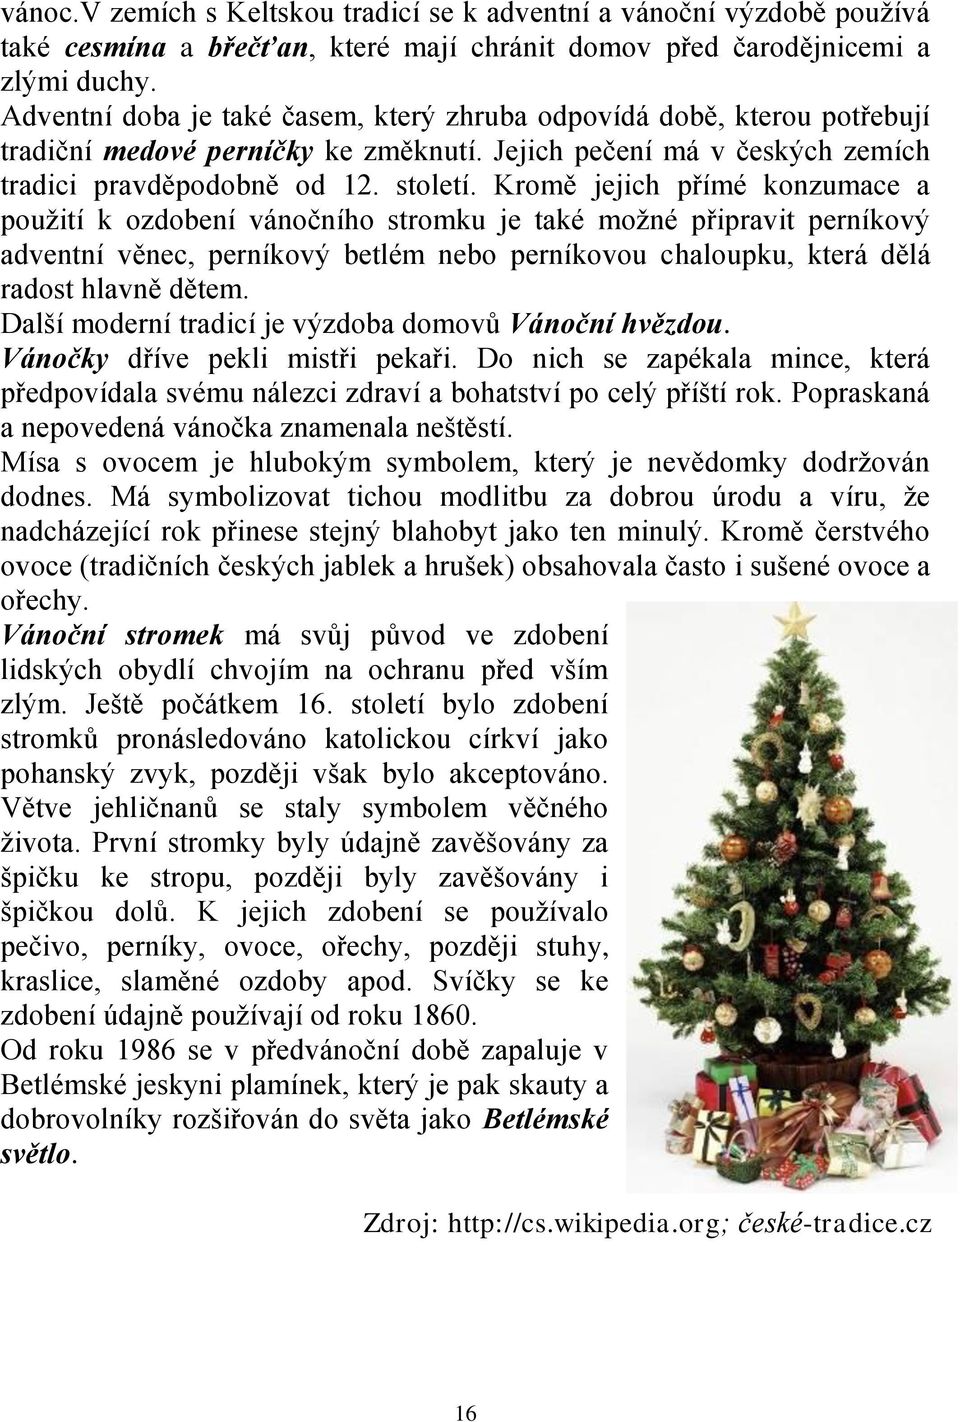 Kromě jejich přímé konzumace a použití k ozdobení vánočního stromku je také možné připravit perníkový adventní věnec, perníkový betlém nebo perníkovou chaloupku, která dělá radost hlavně dětem.